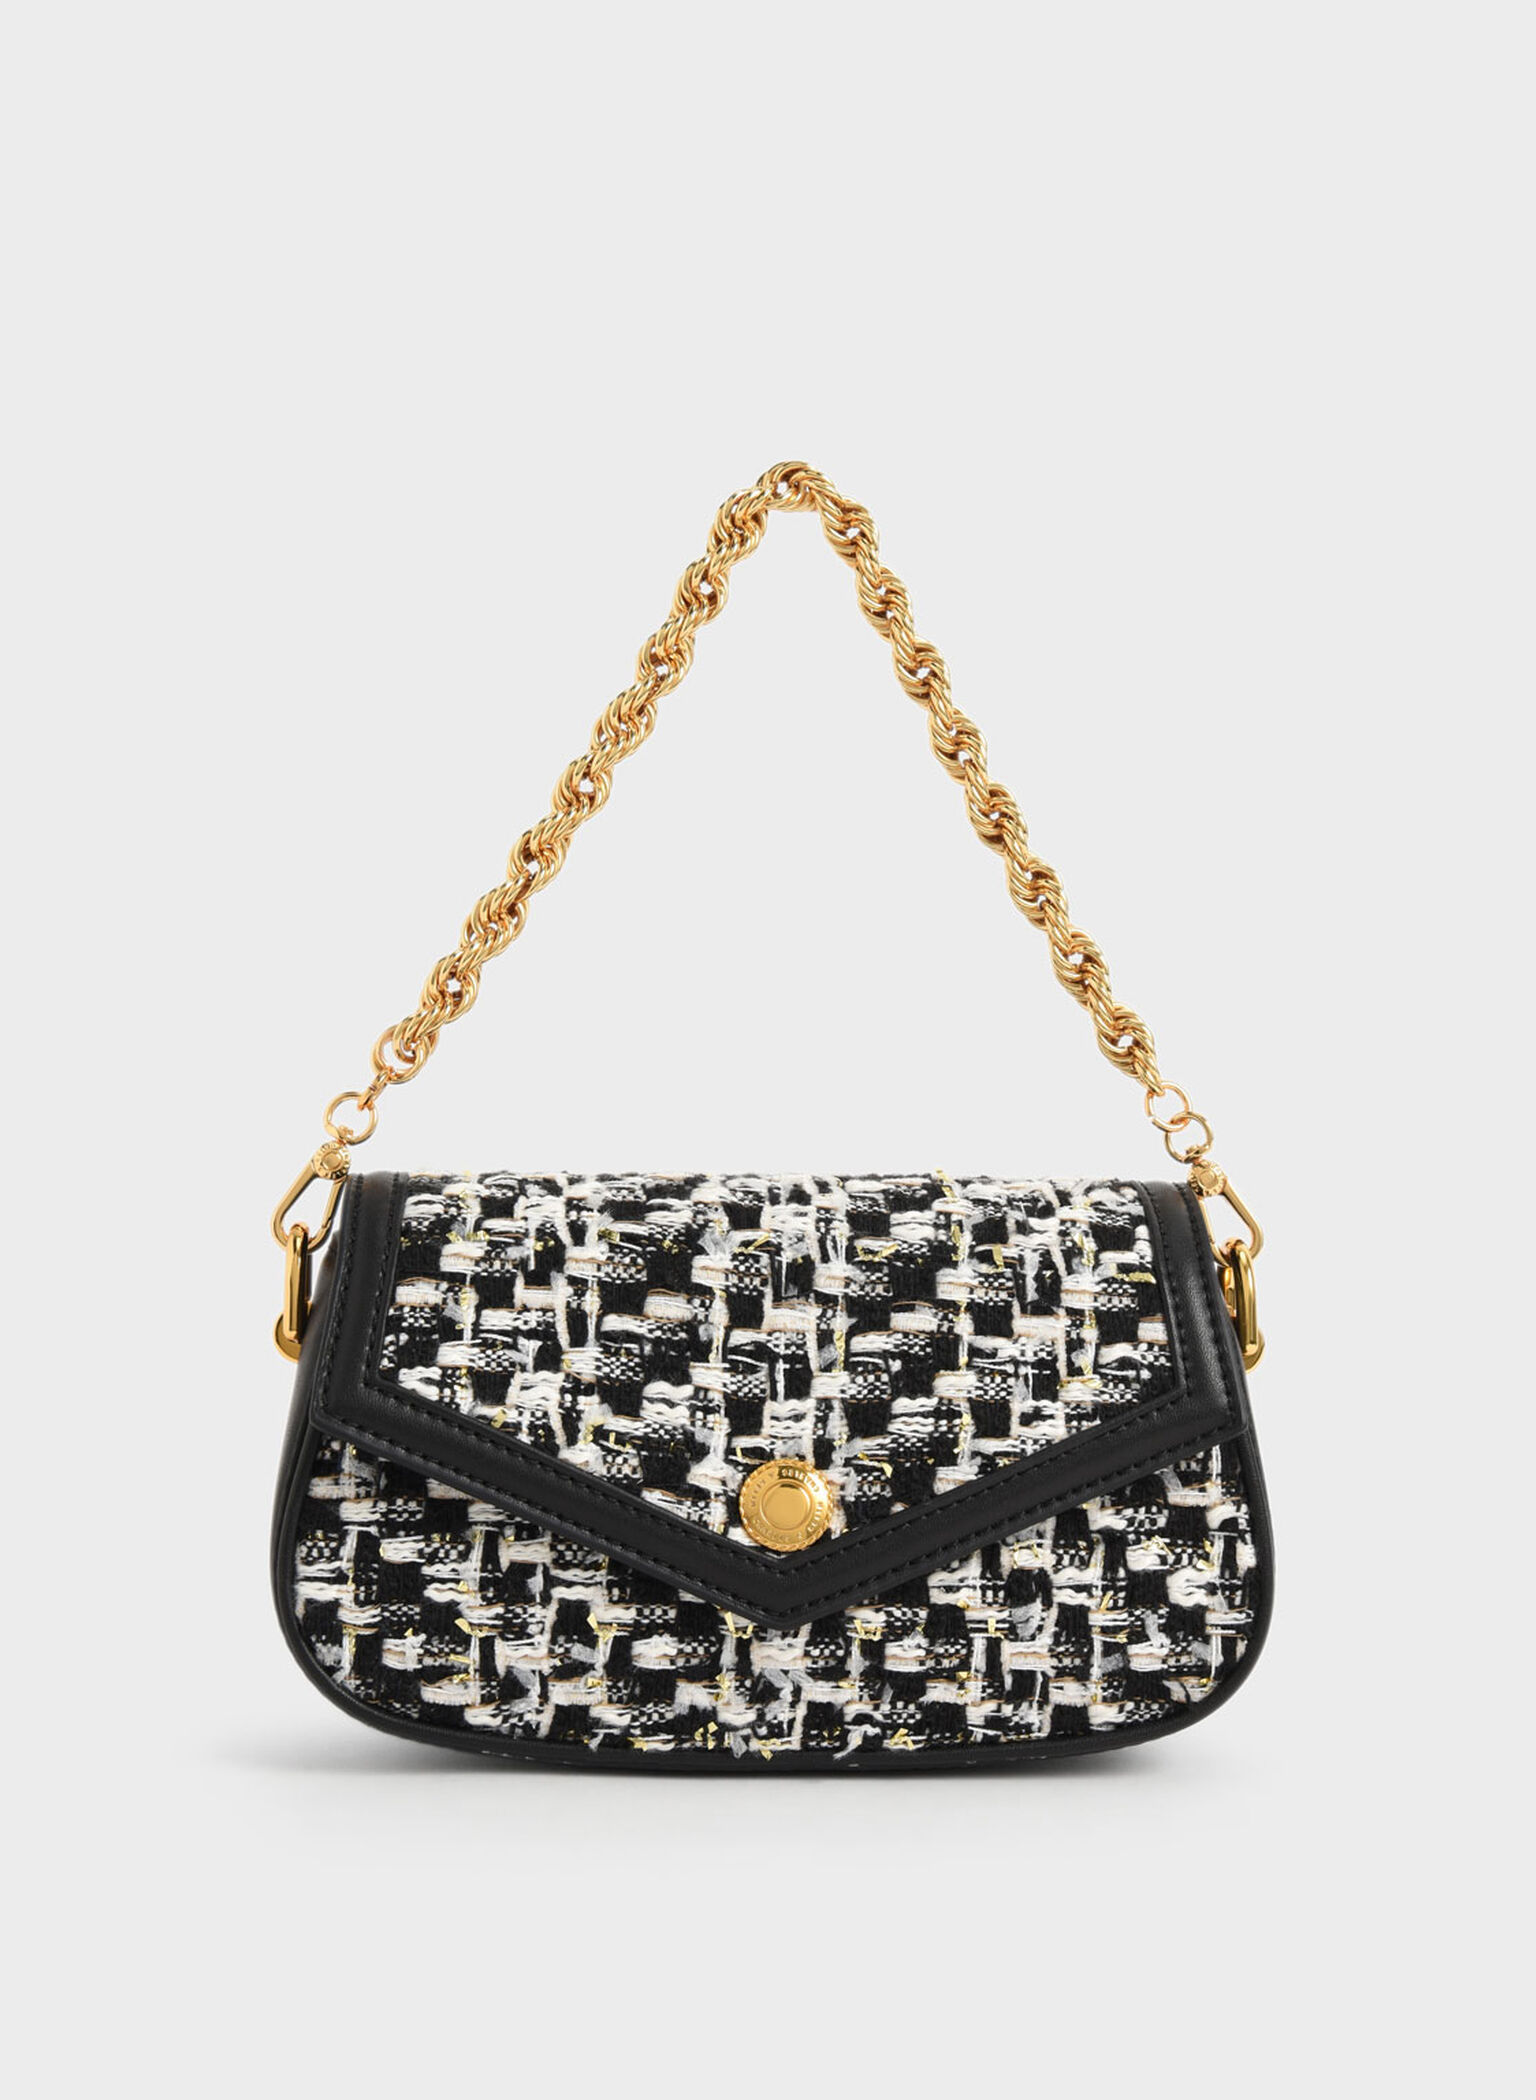 Chanel Egyptian Charms Bag  Bag charm, Gorgeous bags, Bags